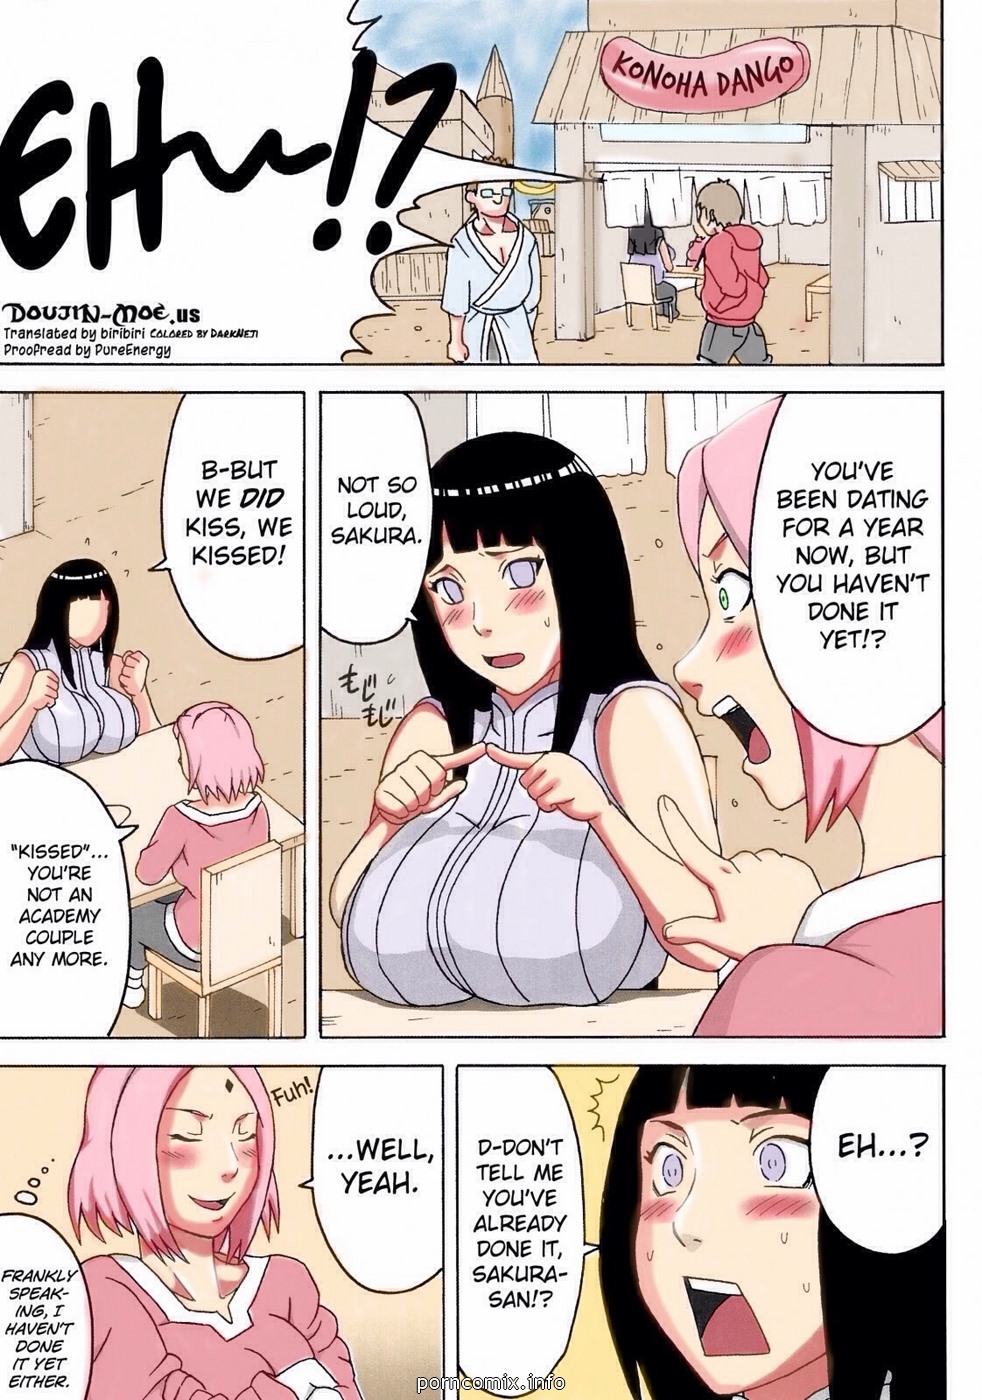 Naruto hentai comic